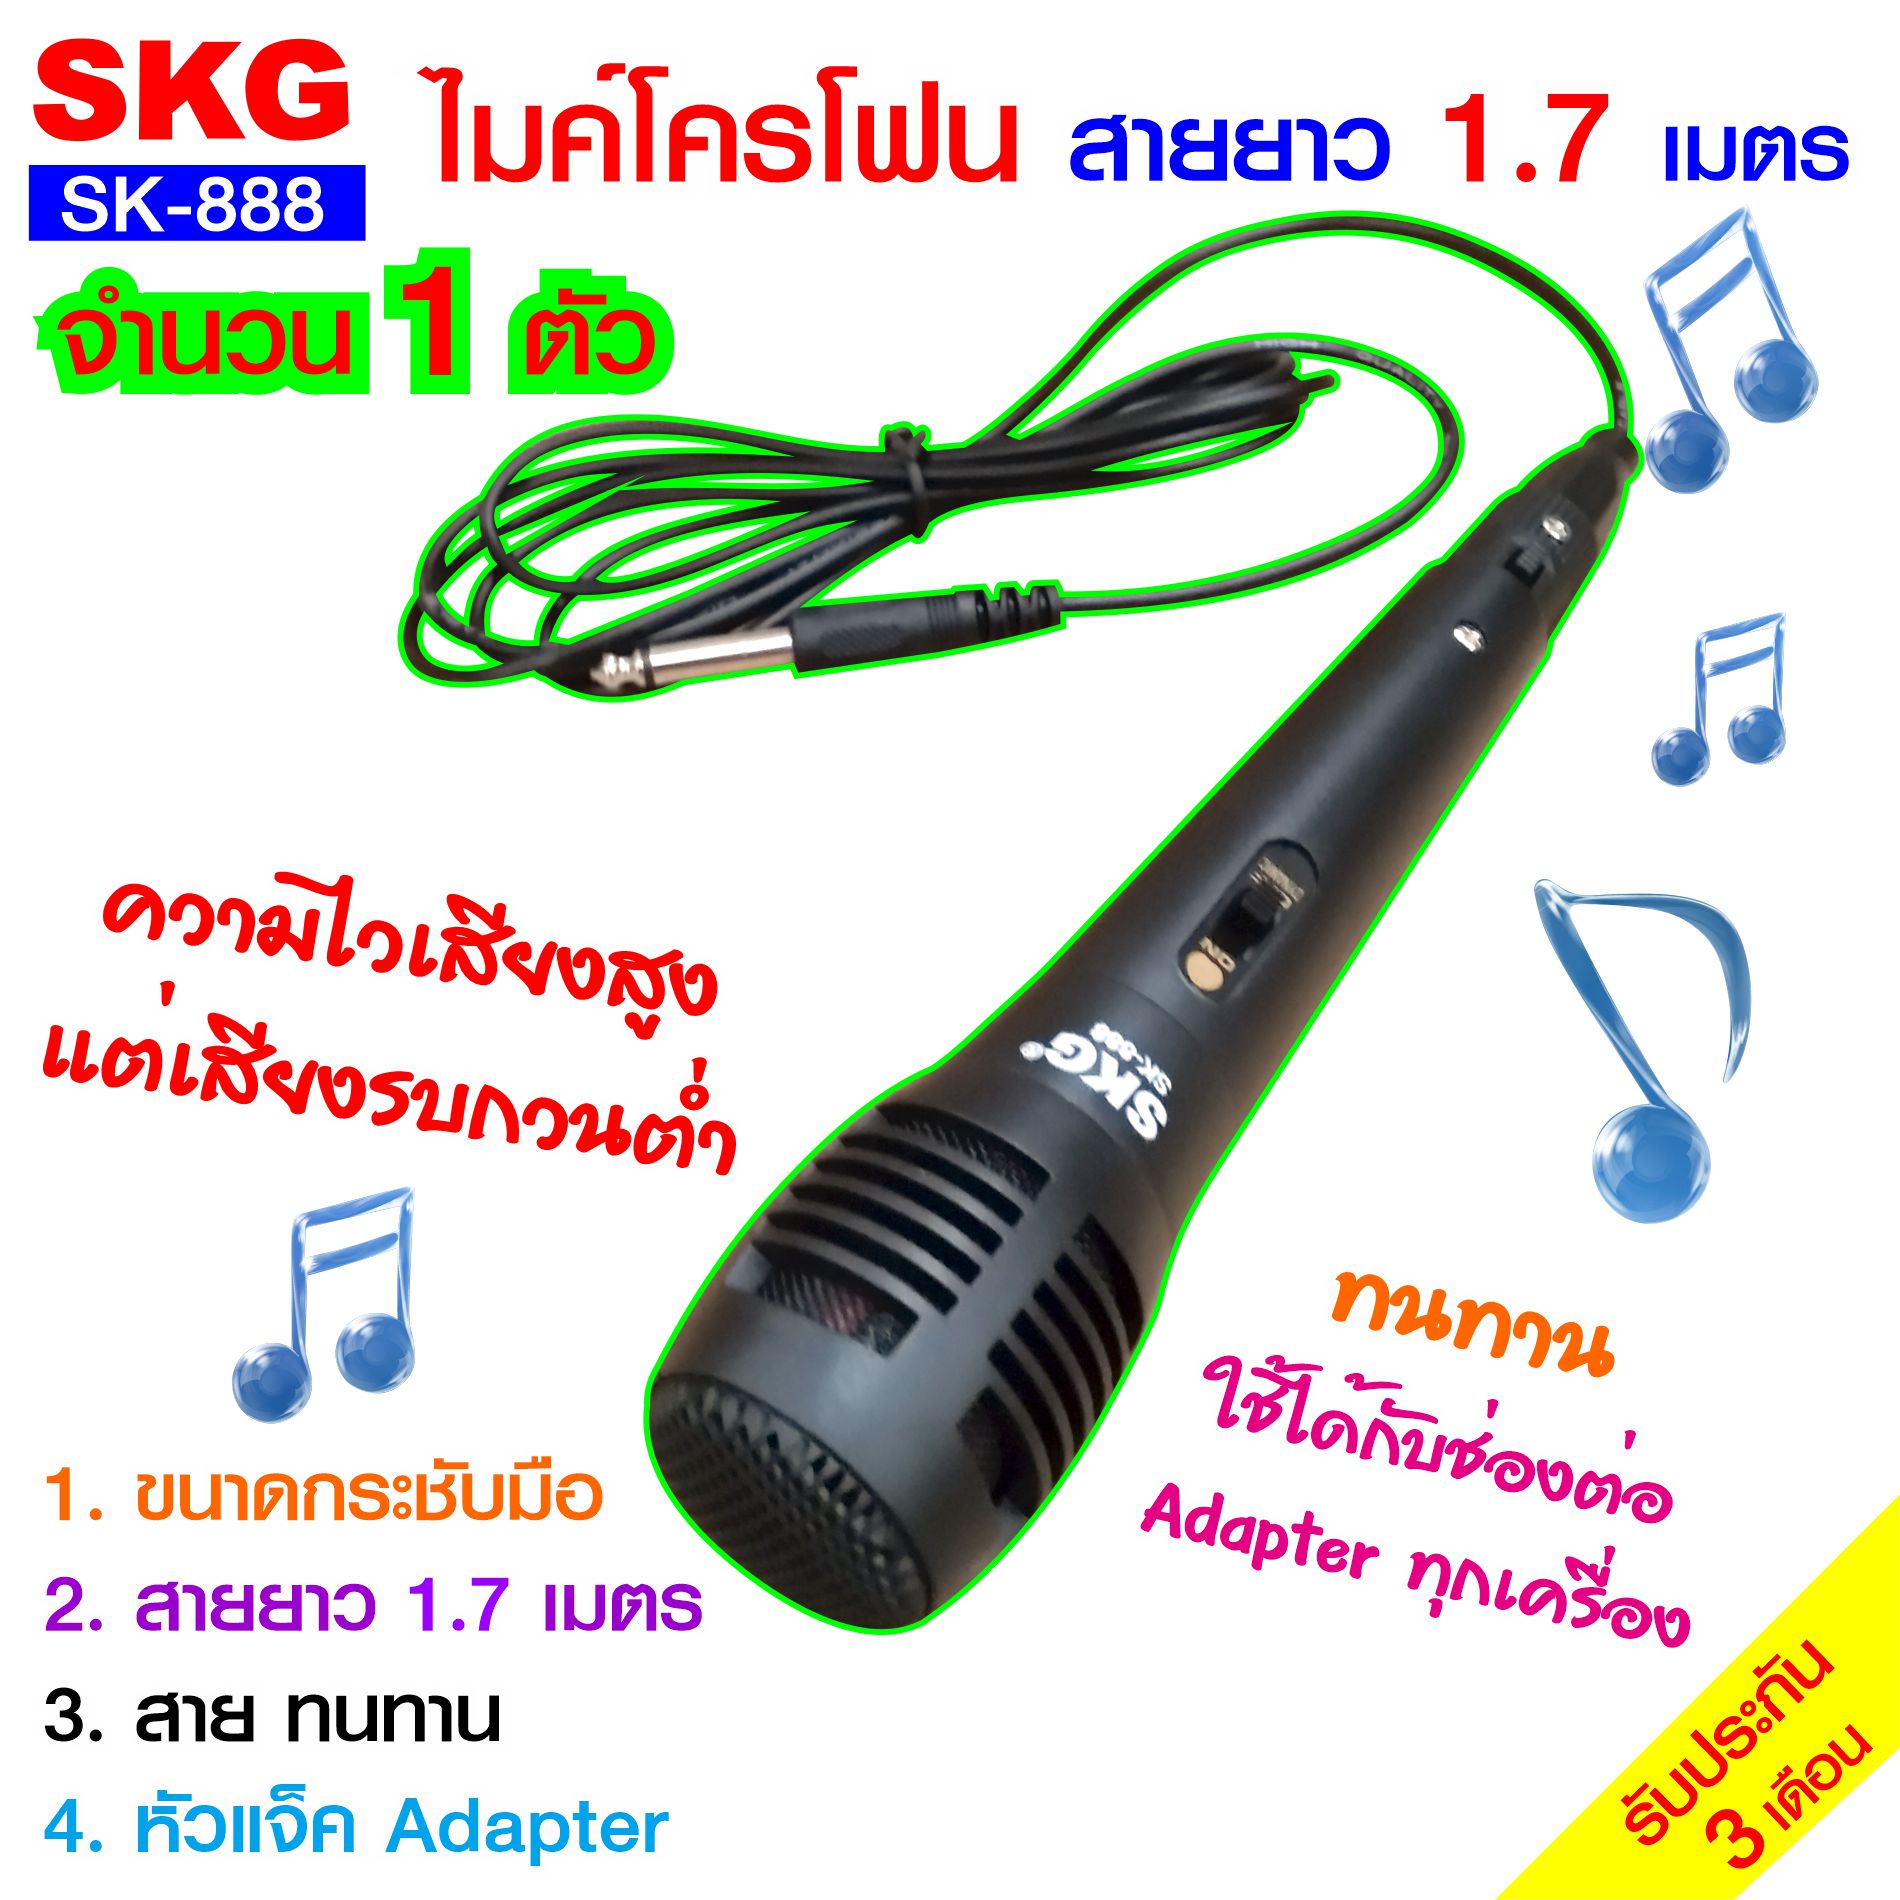 ไมโครโฟน แบบสาย ยาว 1.7เมตร รุ่น SK-888 (สีดำ)